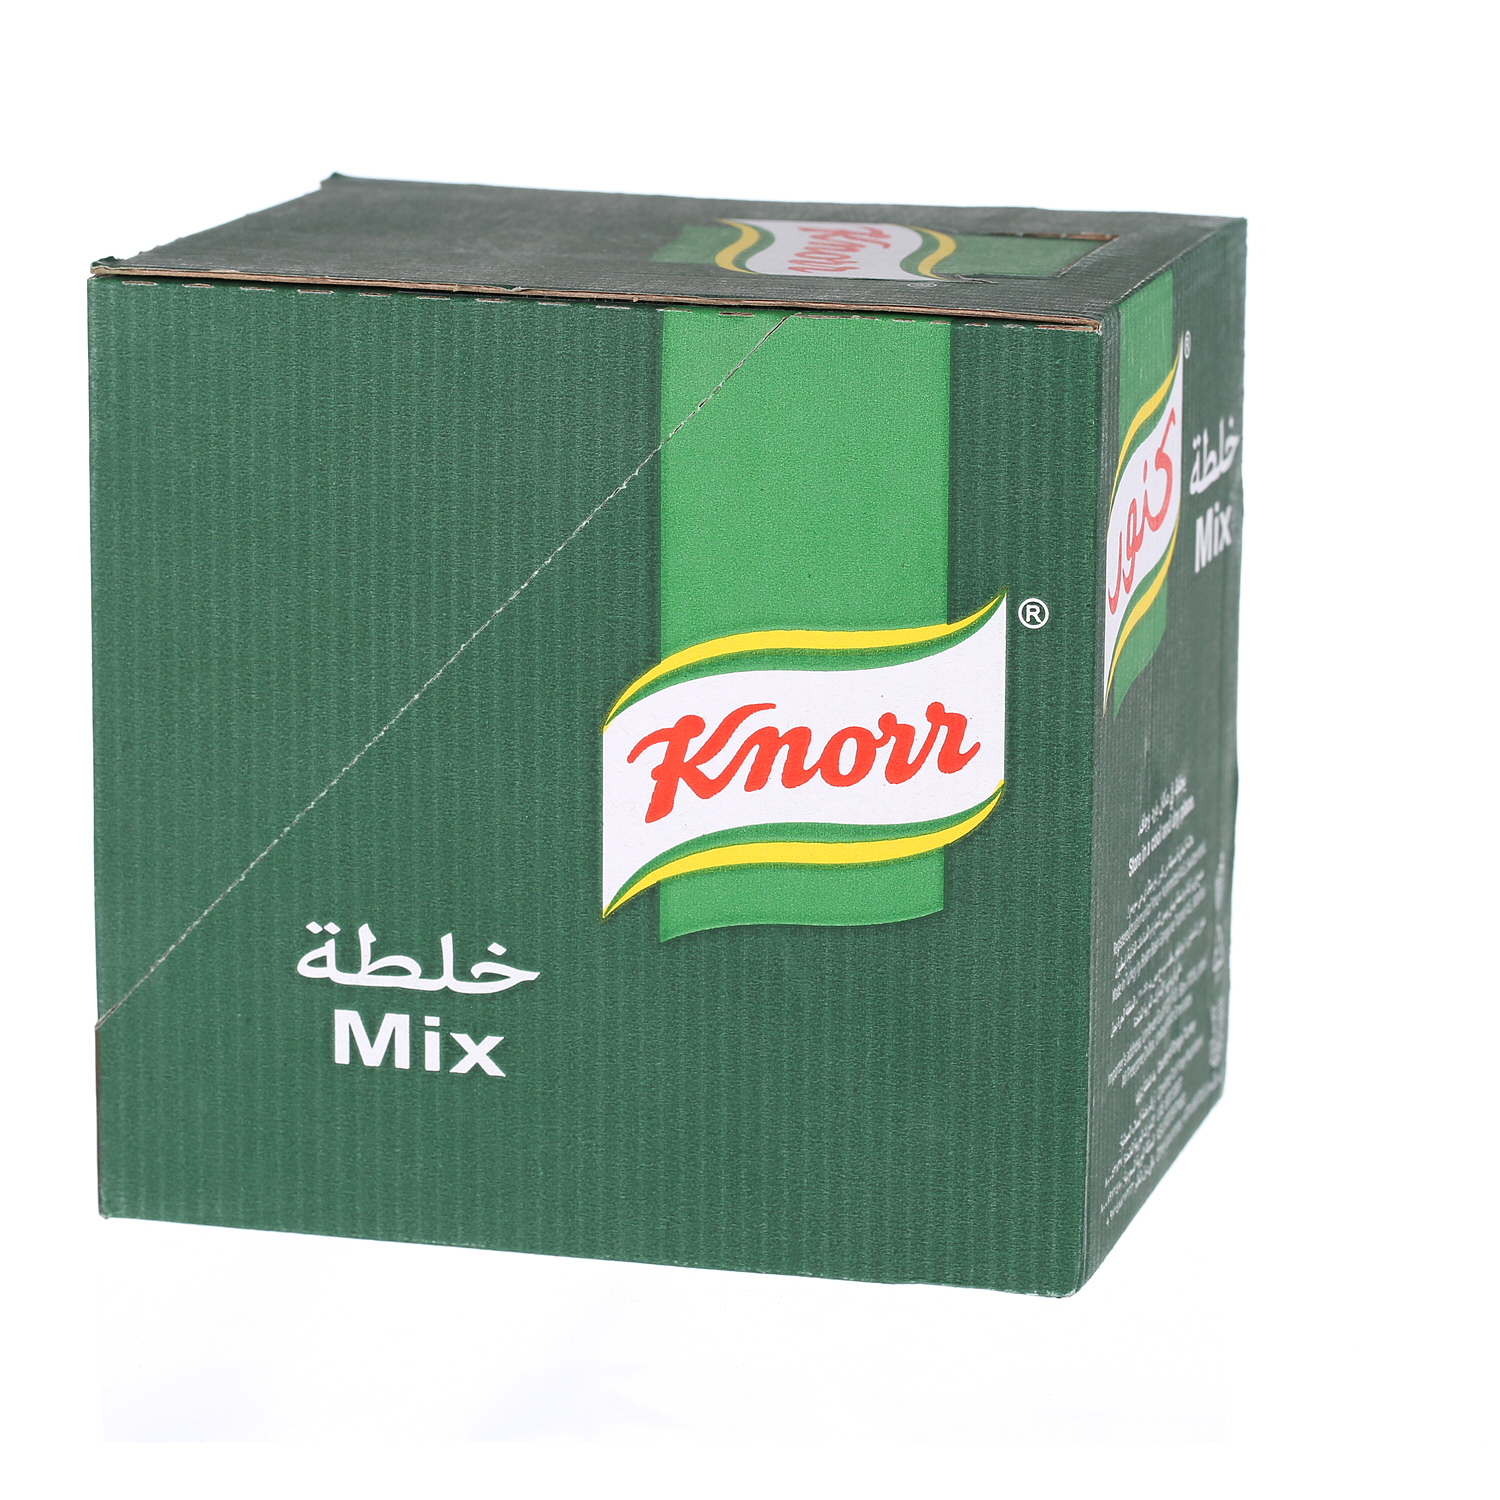 Knorr Kabsa Mix 30 g × 12 Pack